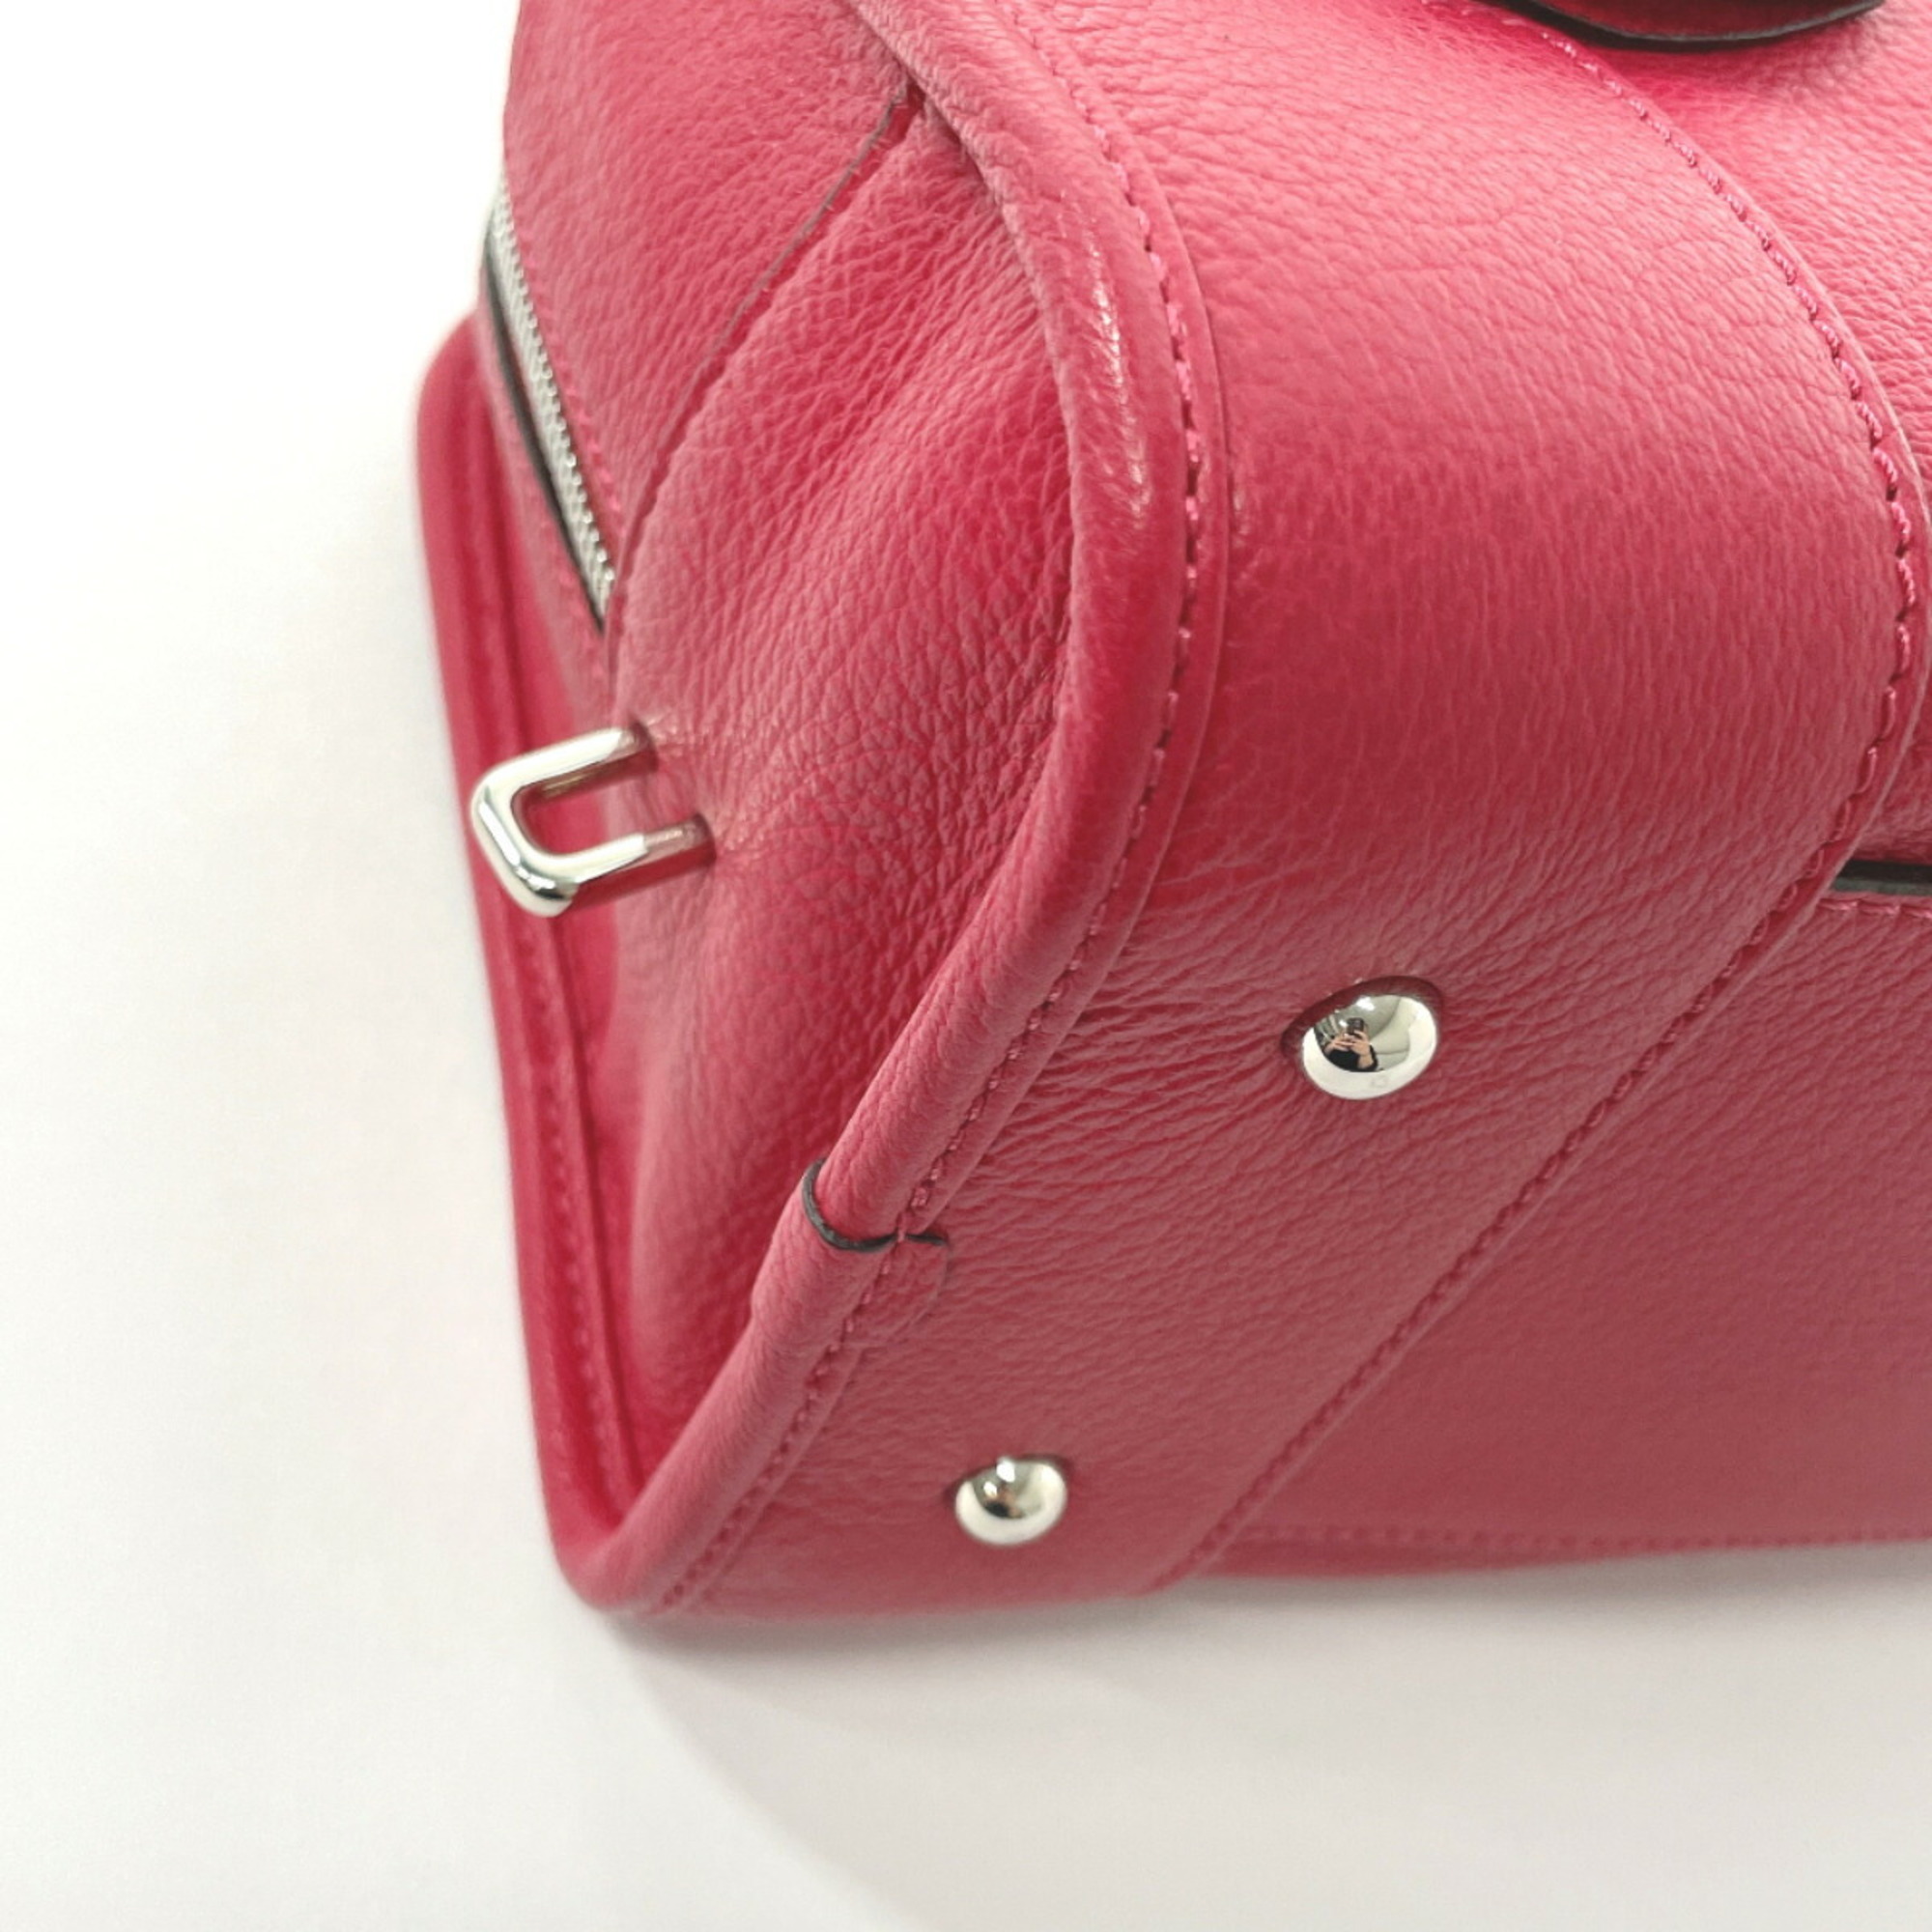 LOEWE Amazona 28 35235A03 Handbag Leather Pink Women's N3123413